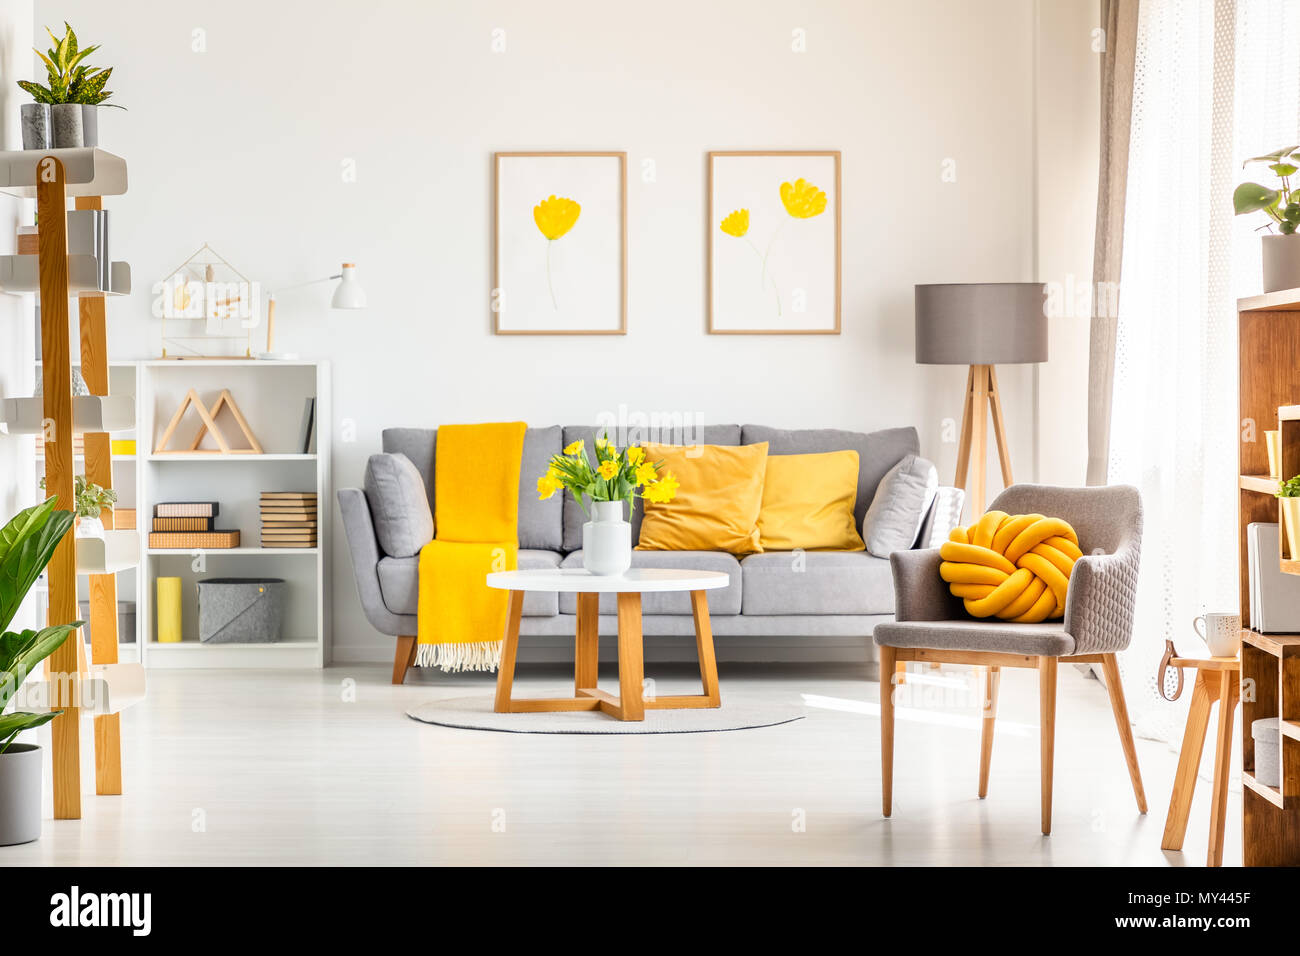 Nodo giallo cuscino sulla poltrona di colore grigio nella vita moderna sala interna con poster sopra il lettino. Foto reale Foto Stock